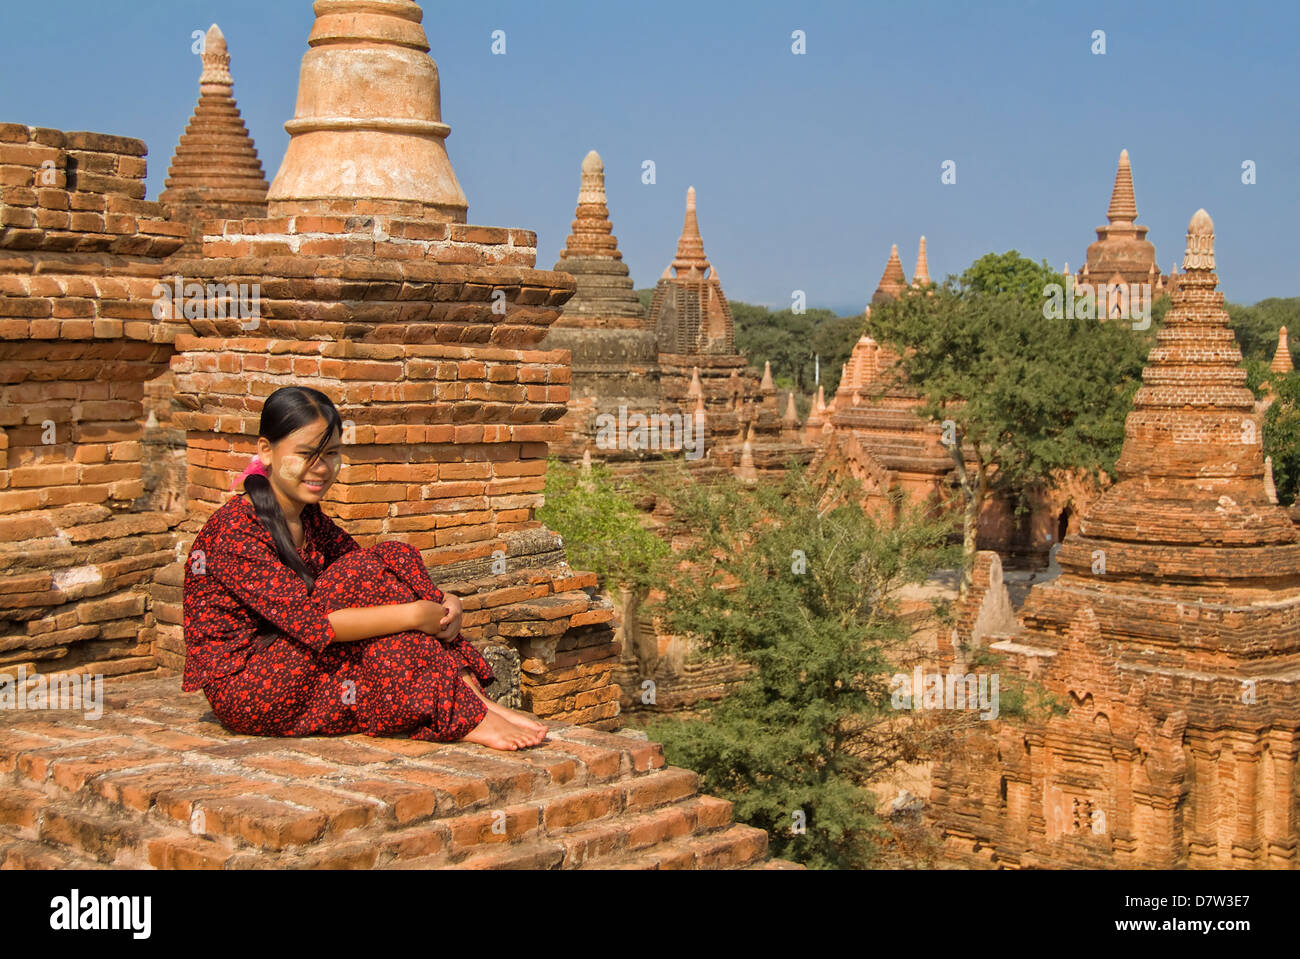 Junge burmesische Frau in einem roten Kleid sitzt auf dem Dach eines Tempels, Bagan (Pagan), Birma Stockfoto